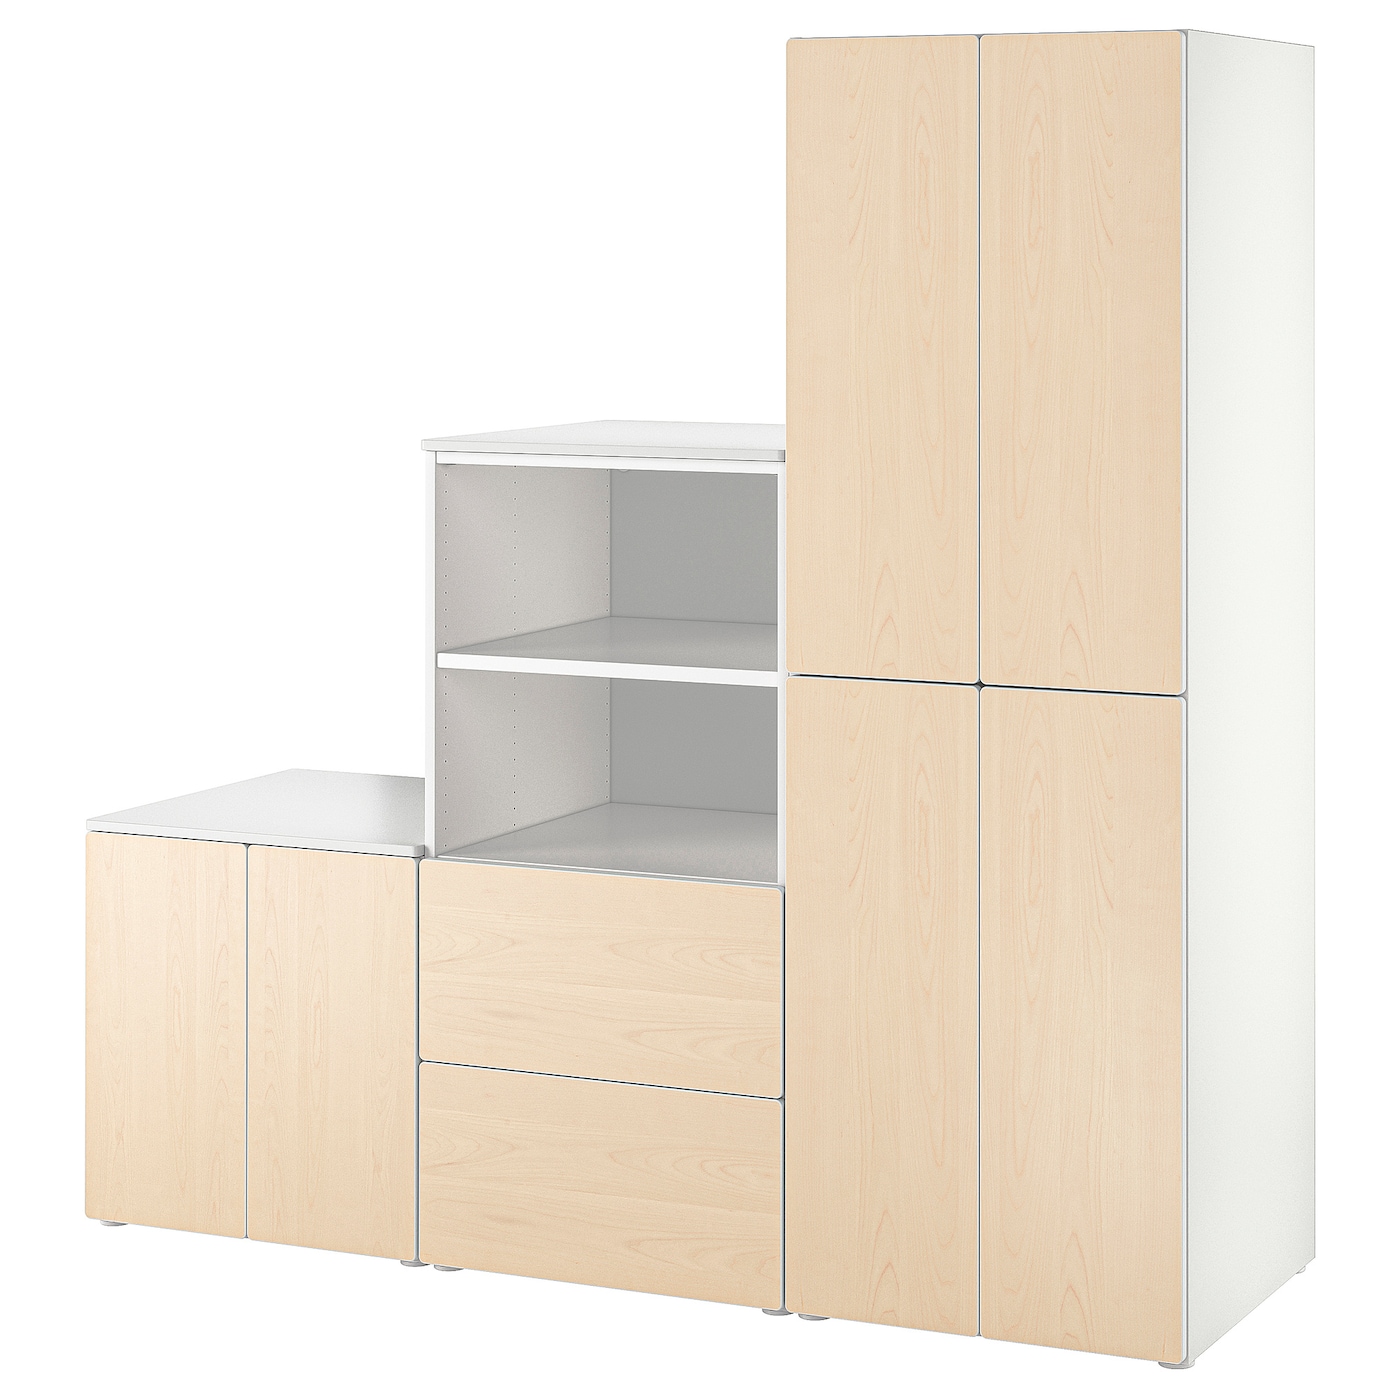 Книжный шкаф - SMÅSTAD / PLATSA /SMАSTAD /  СМОСТАД/ ПЛАТСА  ИКЕА,  181х180 см, белый/под беленый дуб